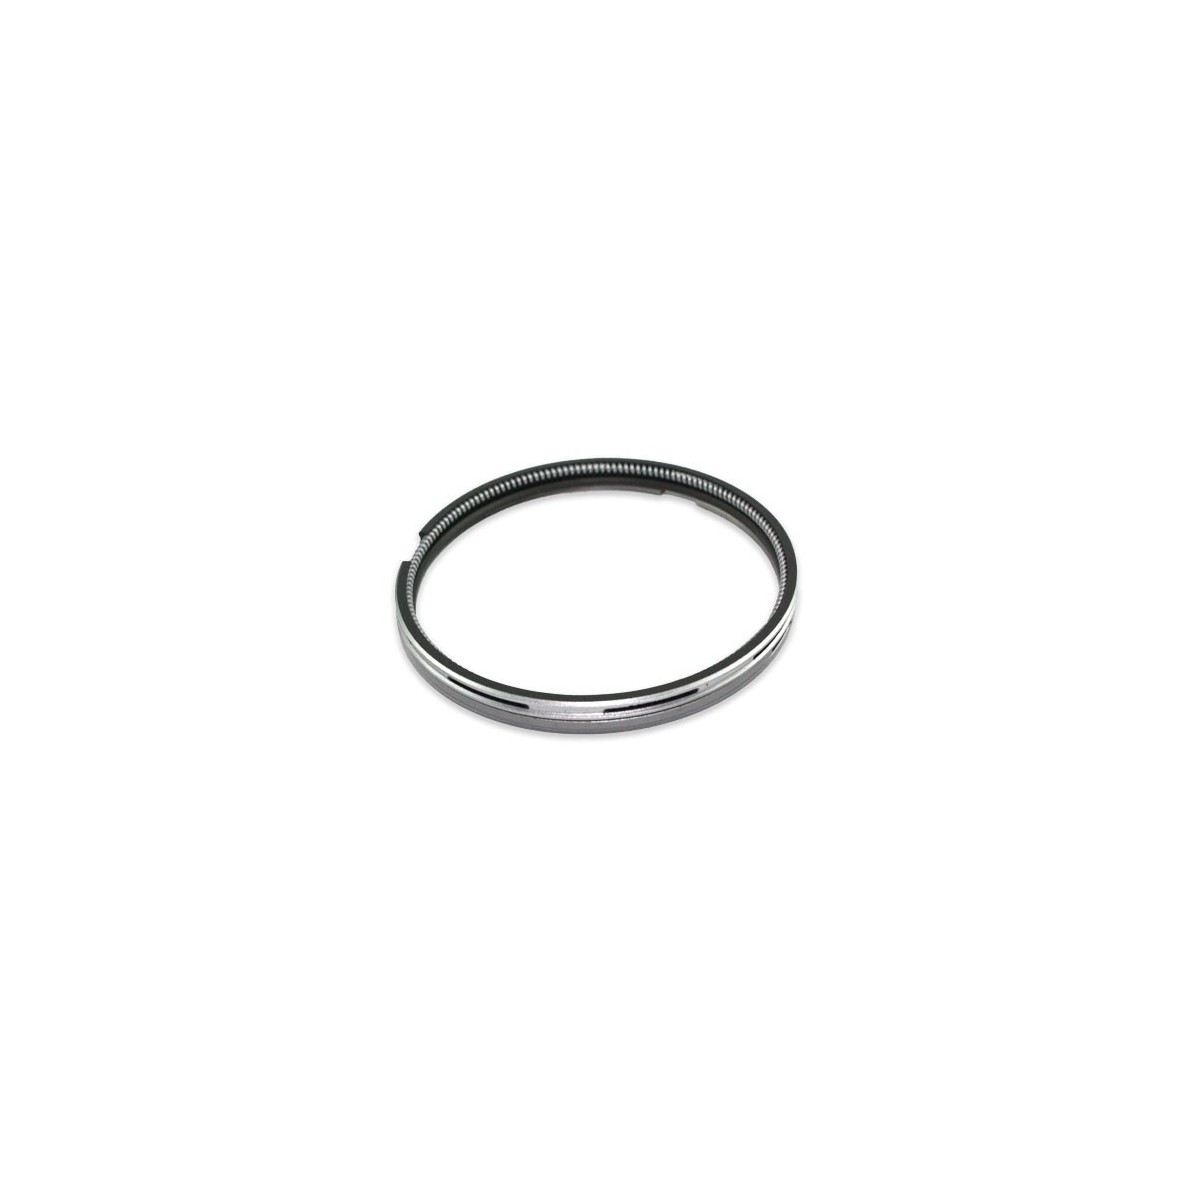 Piston ring set Hinomoto N239 82mm:1.5 x 1.5 x 3 STD